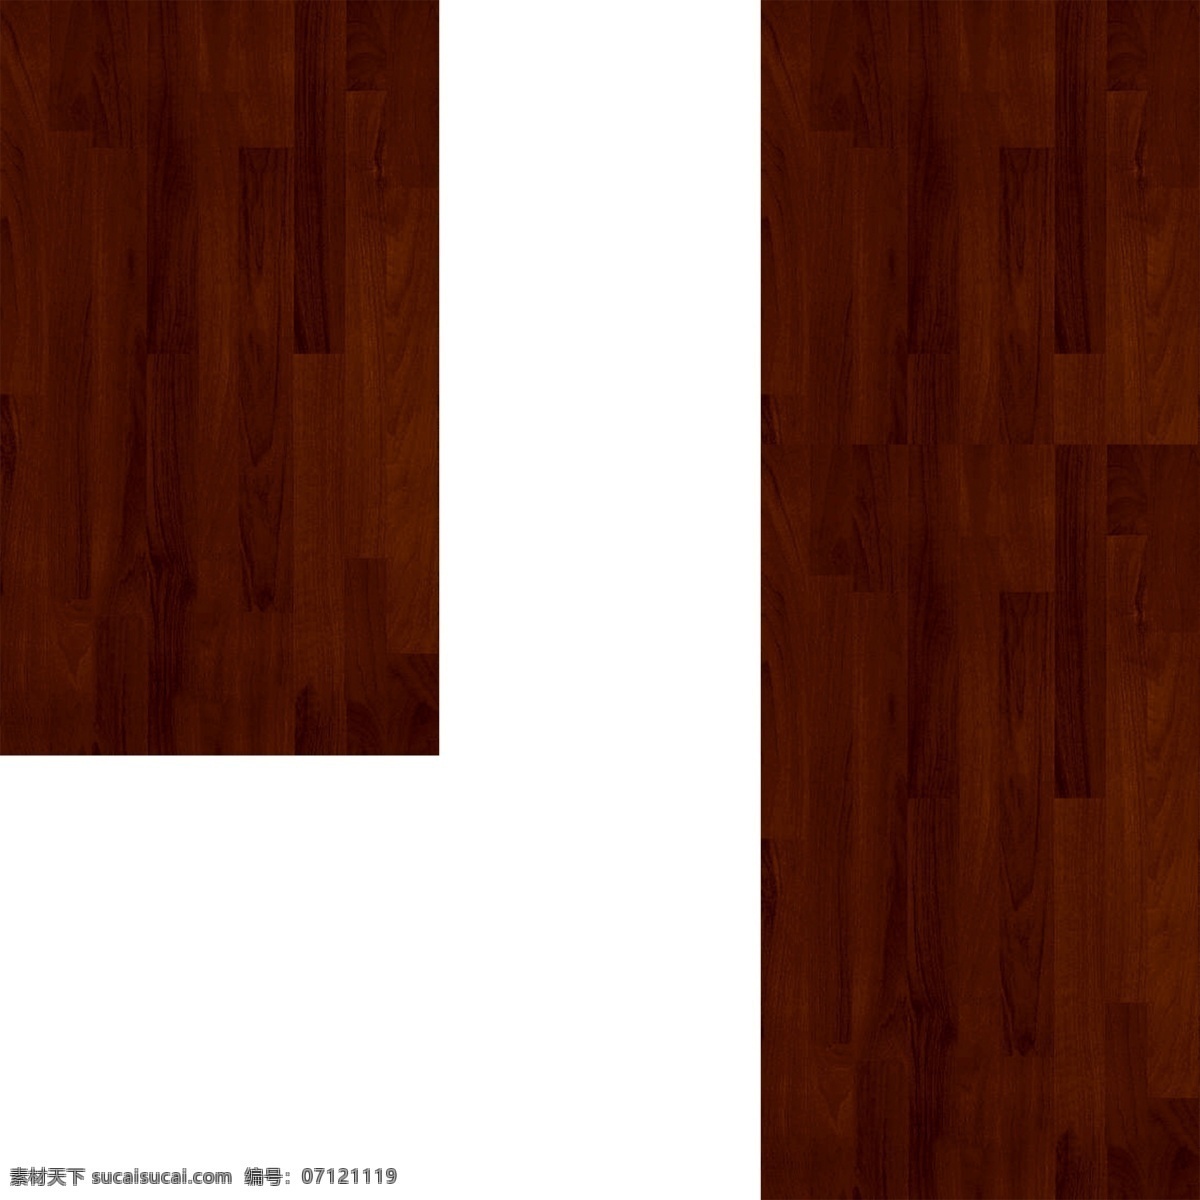 地板 贴图4 地板贴图 地板效果图 装修效果图 地板设计素材 地板素材 建材 建筑 平面图 室内地板 装饰平面图材 白色